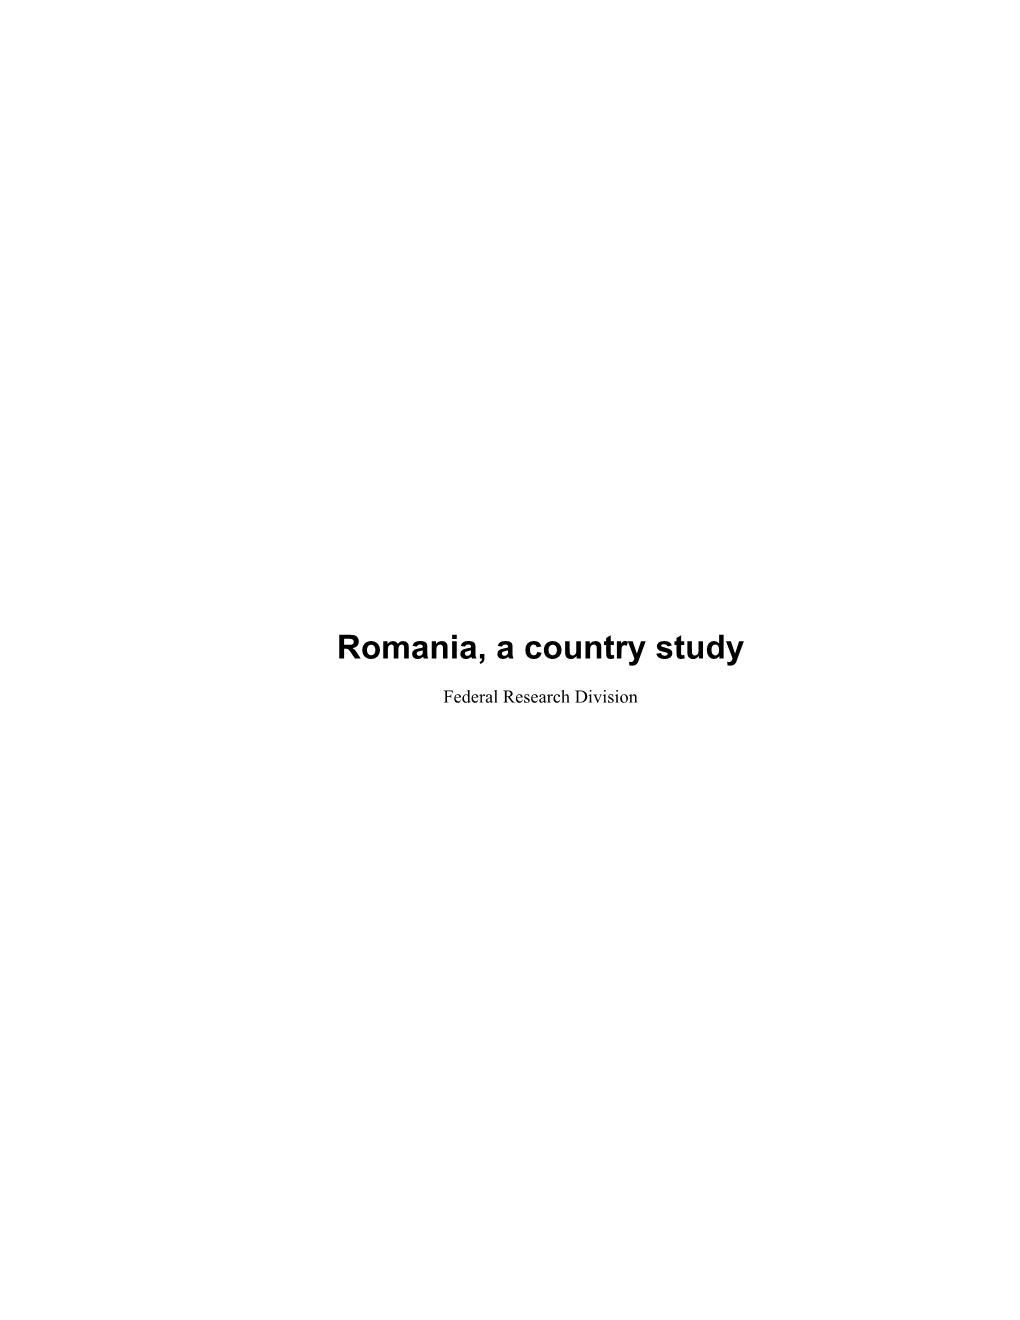 Romania, a Country Study